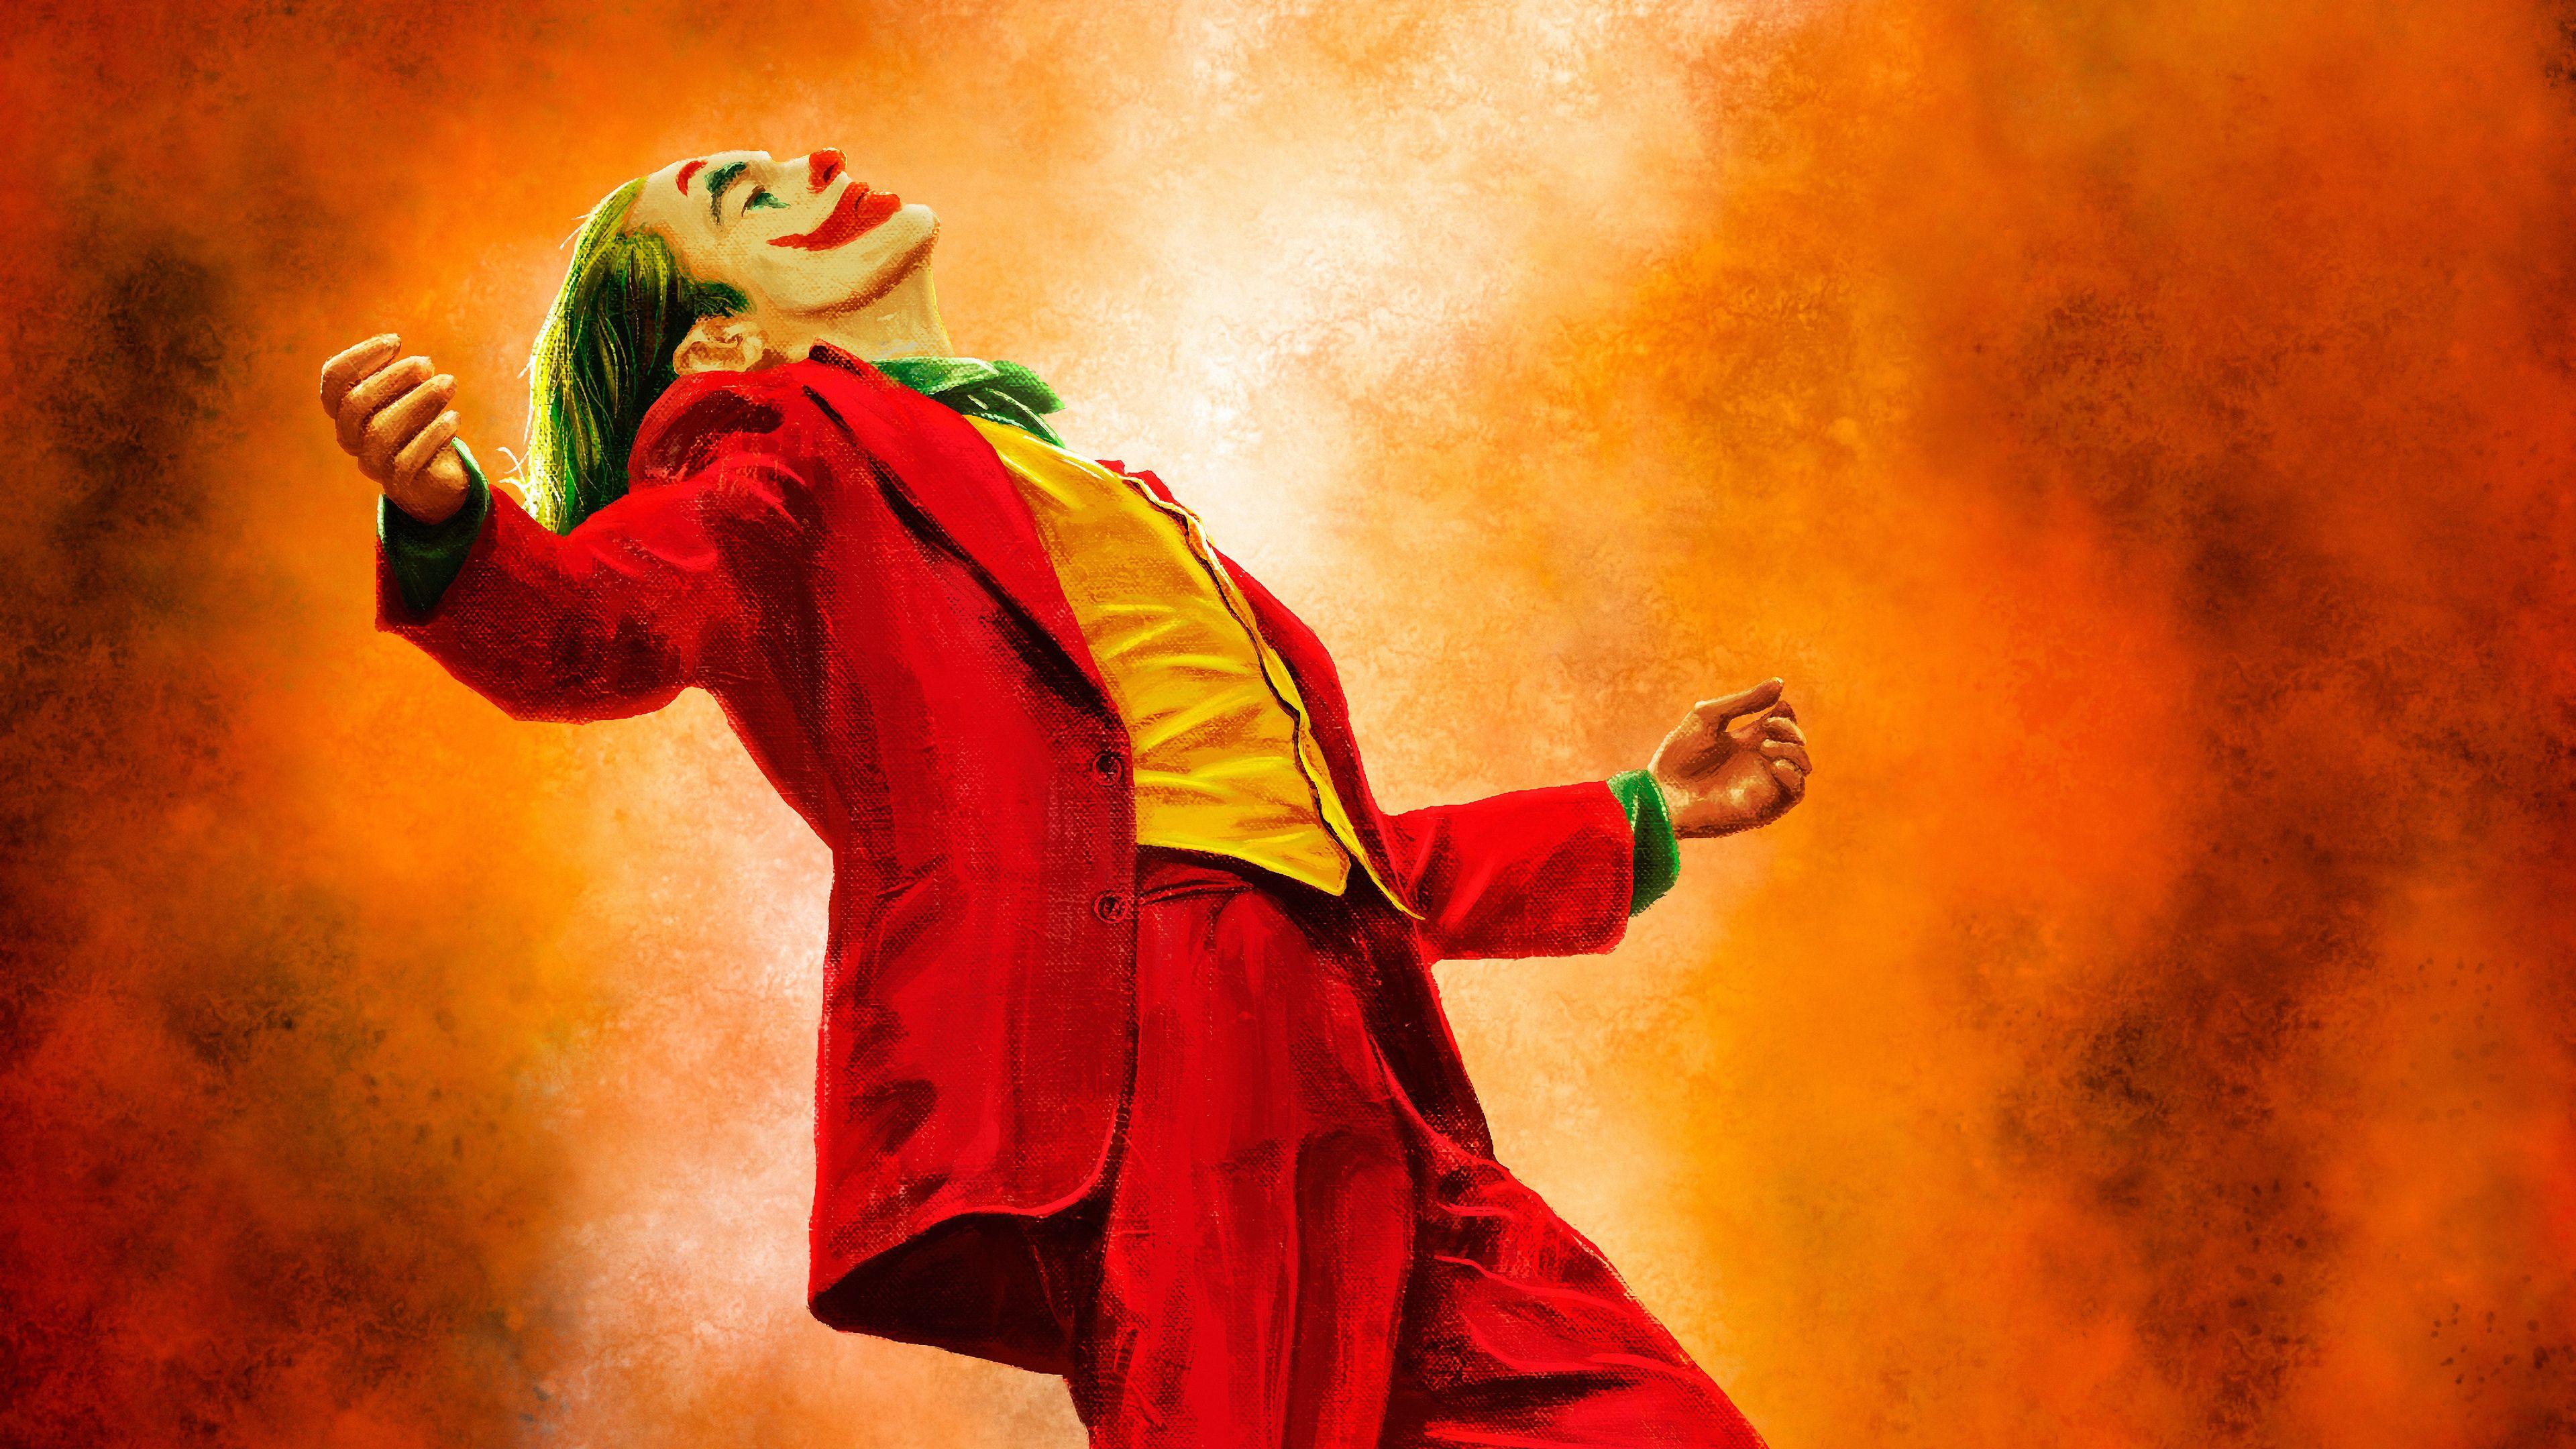 Joker Dancing Wallpapers - Top Free Joker Dancing Backgrounds